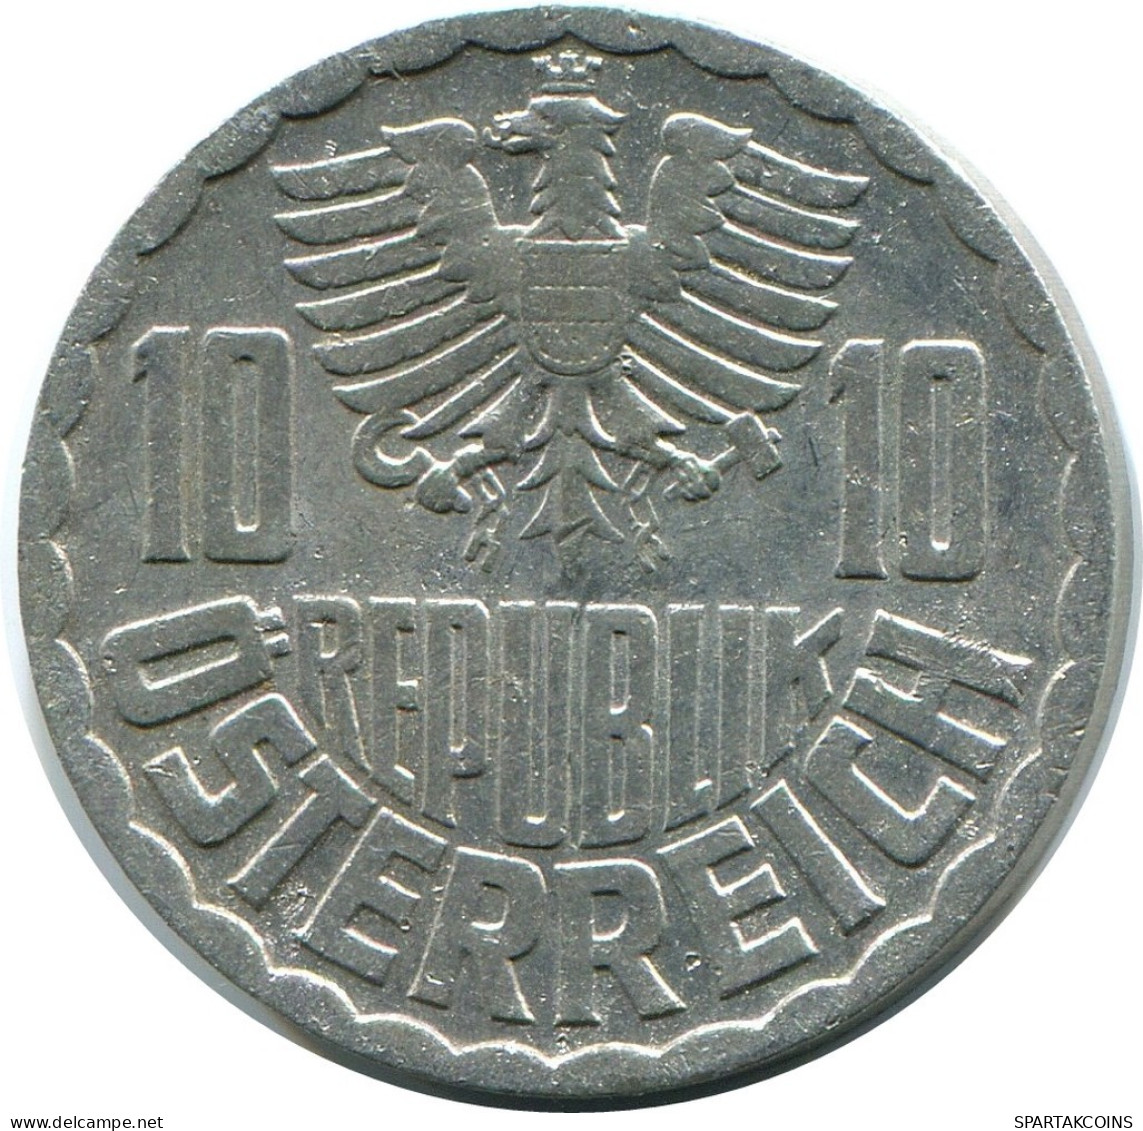 10 GROSCHEN 1971 AUSTRIA Coin SILVER #AZ564.U.A - Autriche